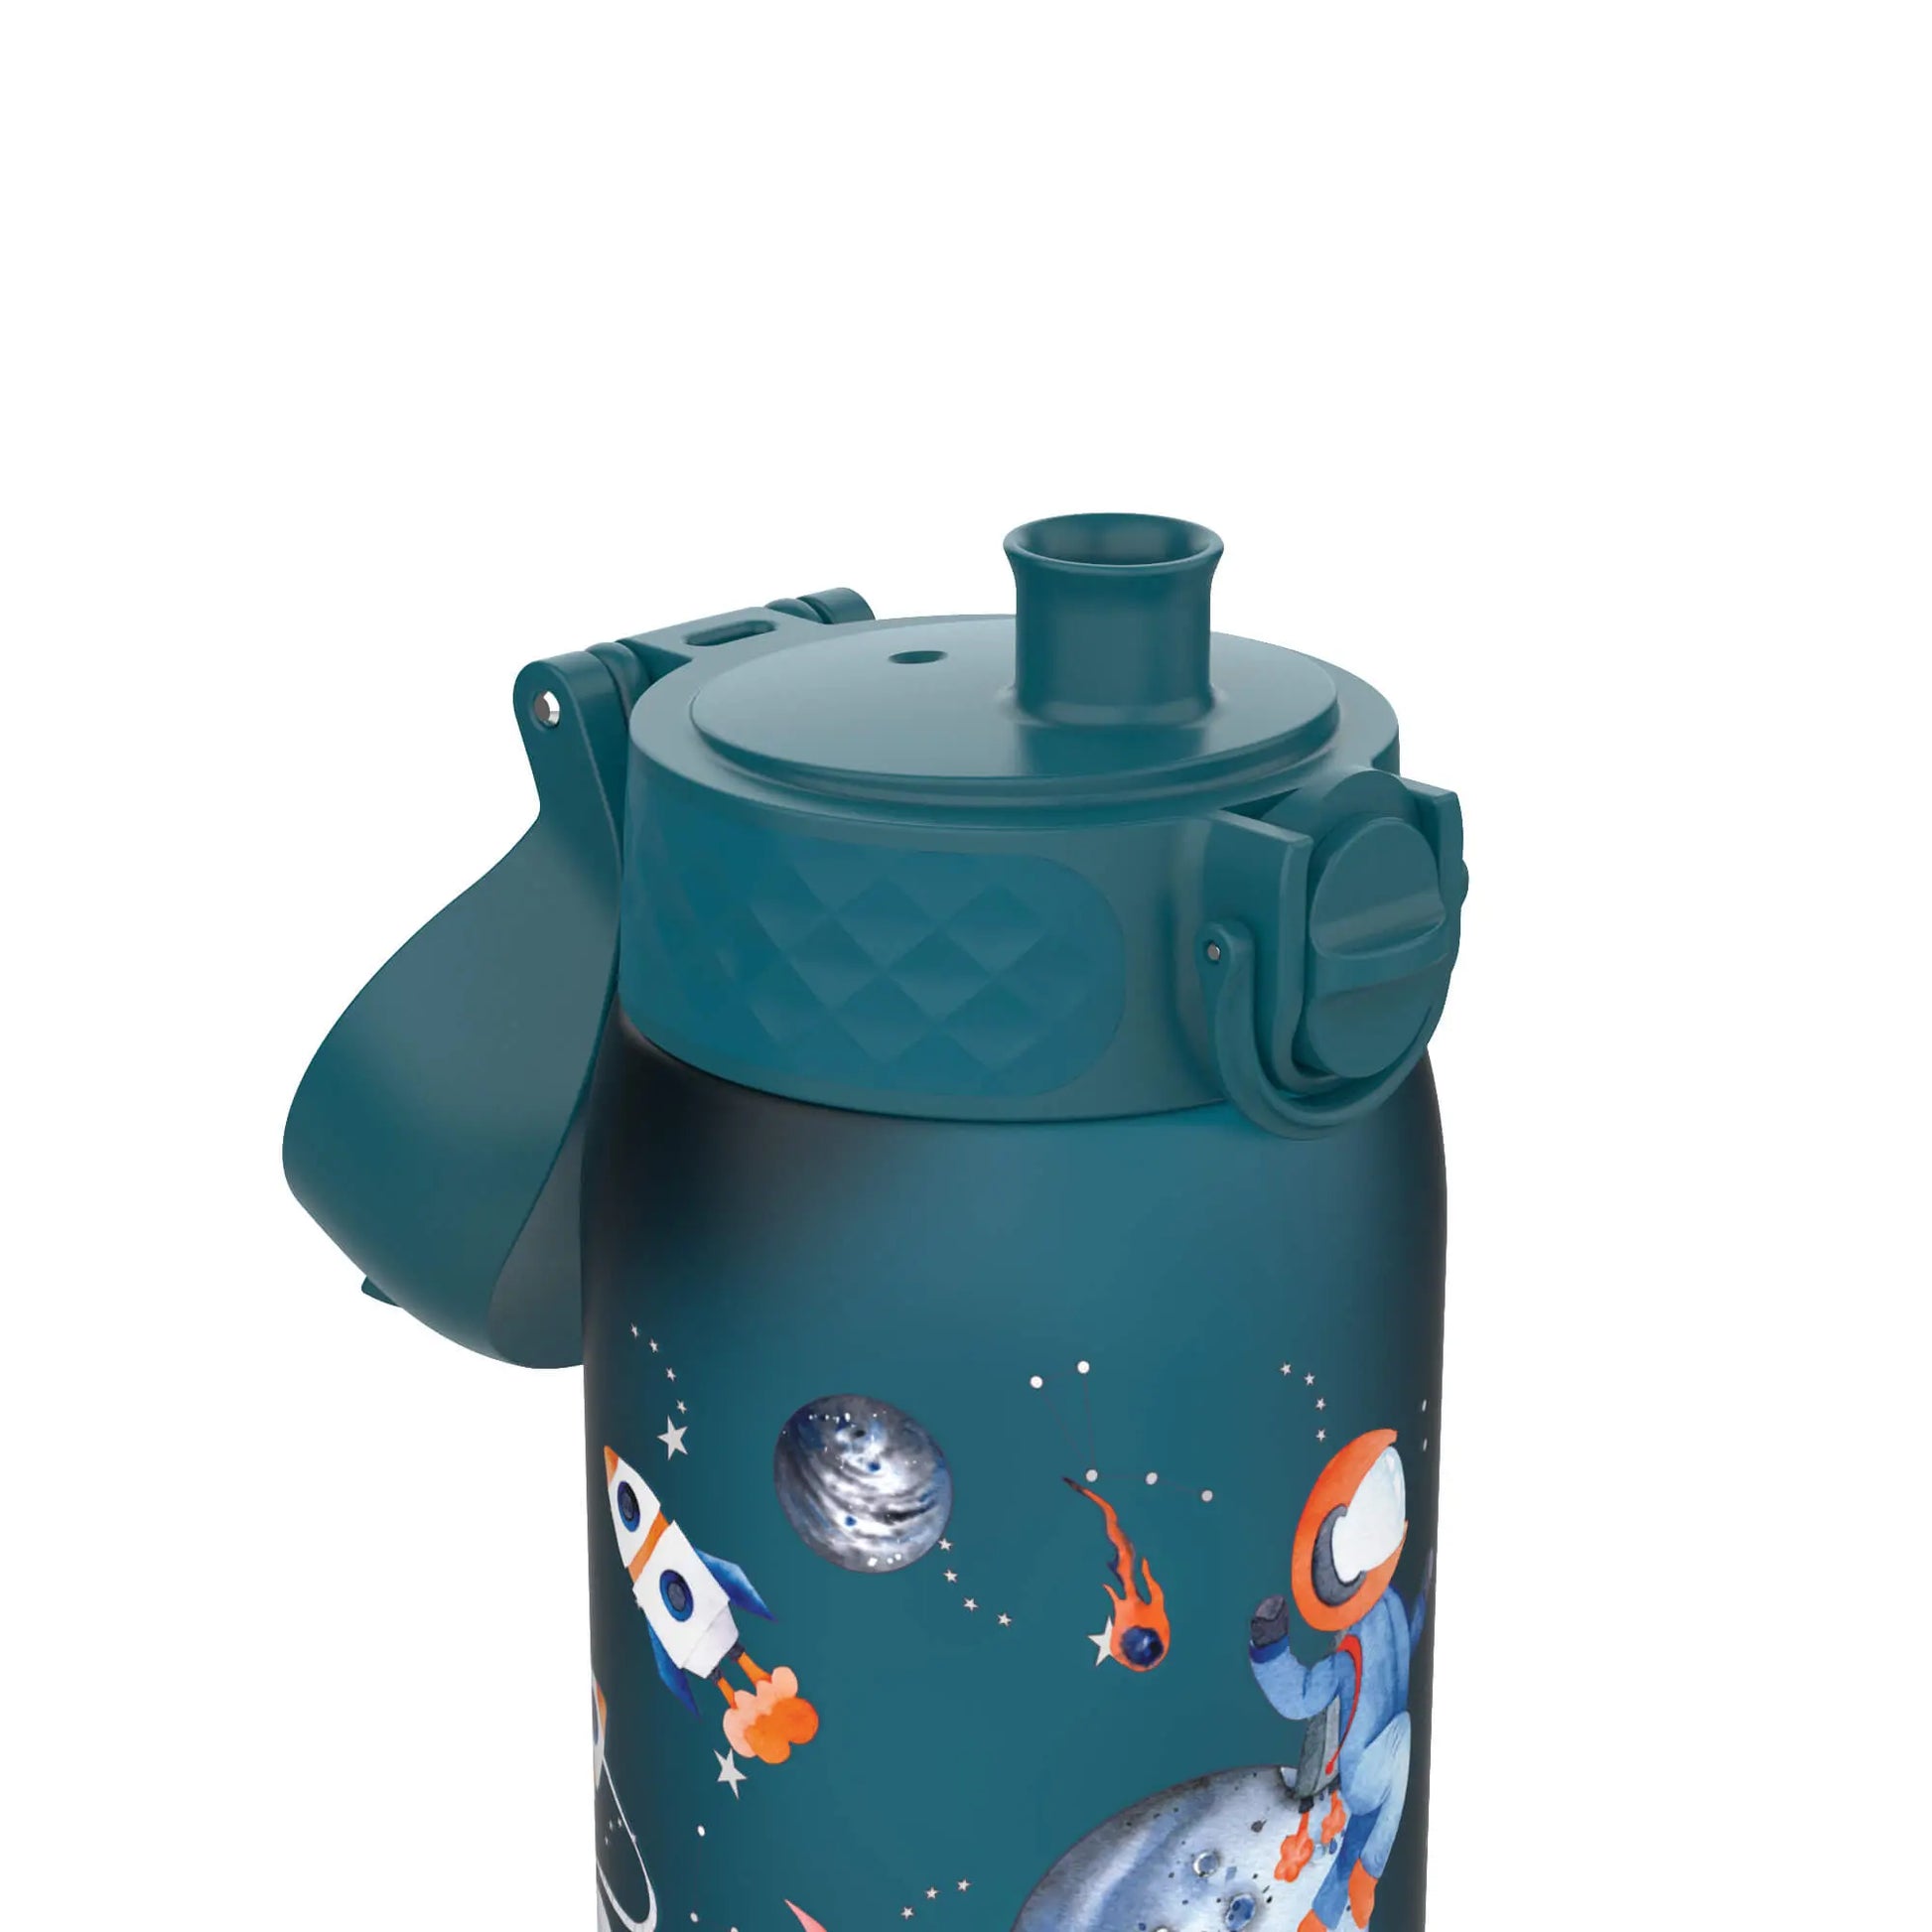 Leak Proof Kids Water Bottle, Recyclon™, Space, 350ml (12oz) Ion8